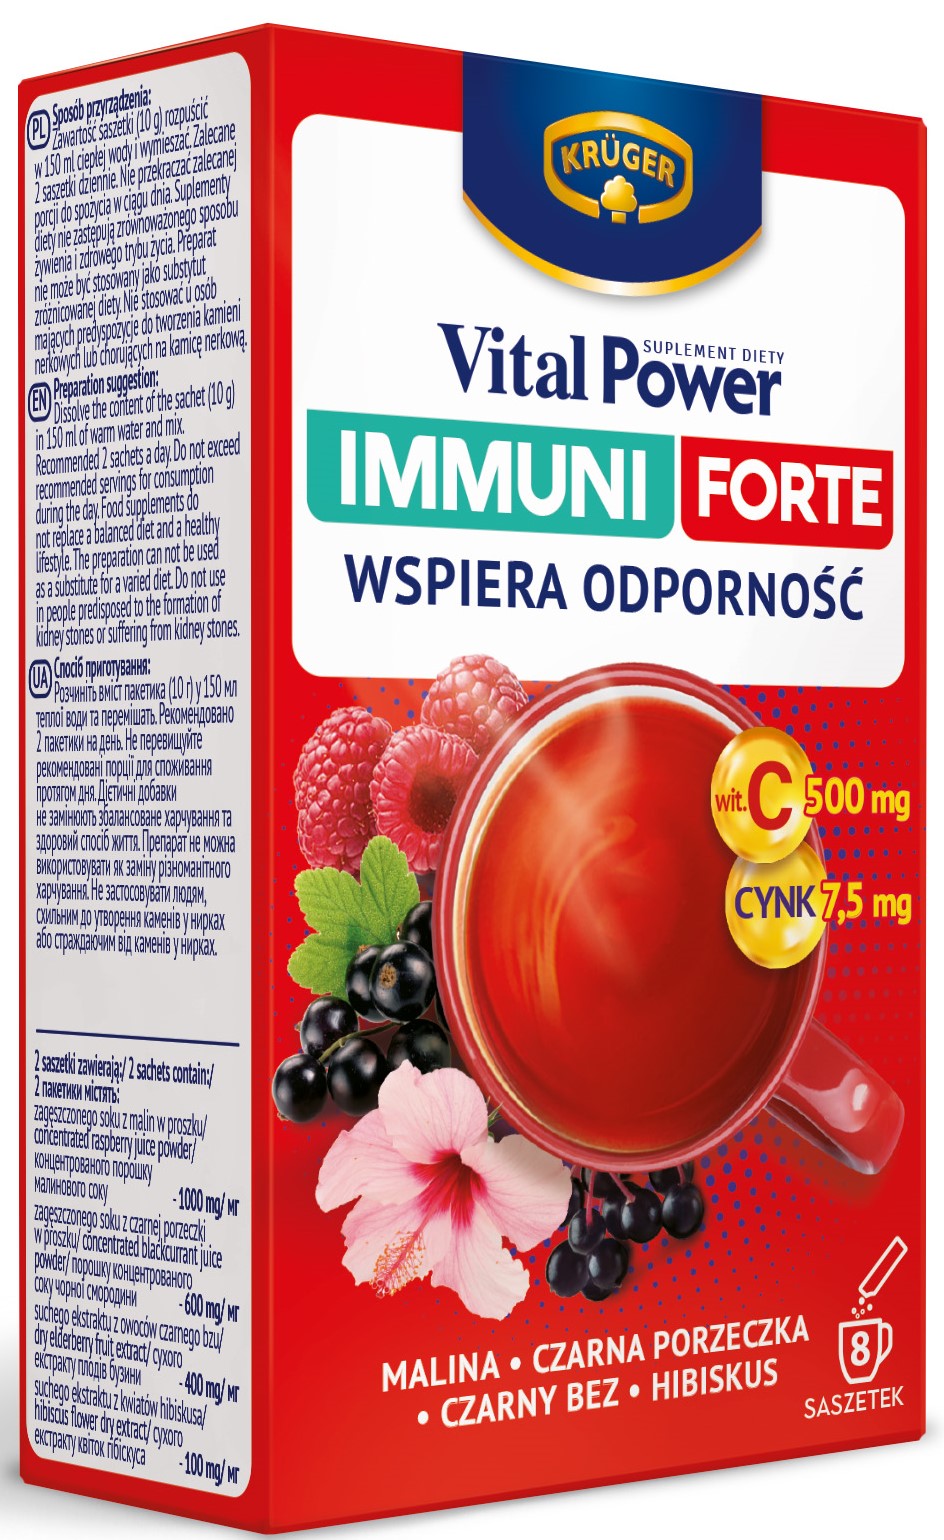 Vital Power Immuni Forte   Wspiera odporność  Malina , Czarny bez Czarna porzeczka ,  Hibiskus, Witamina C